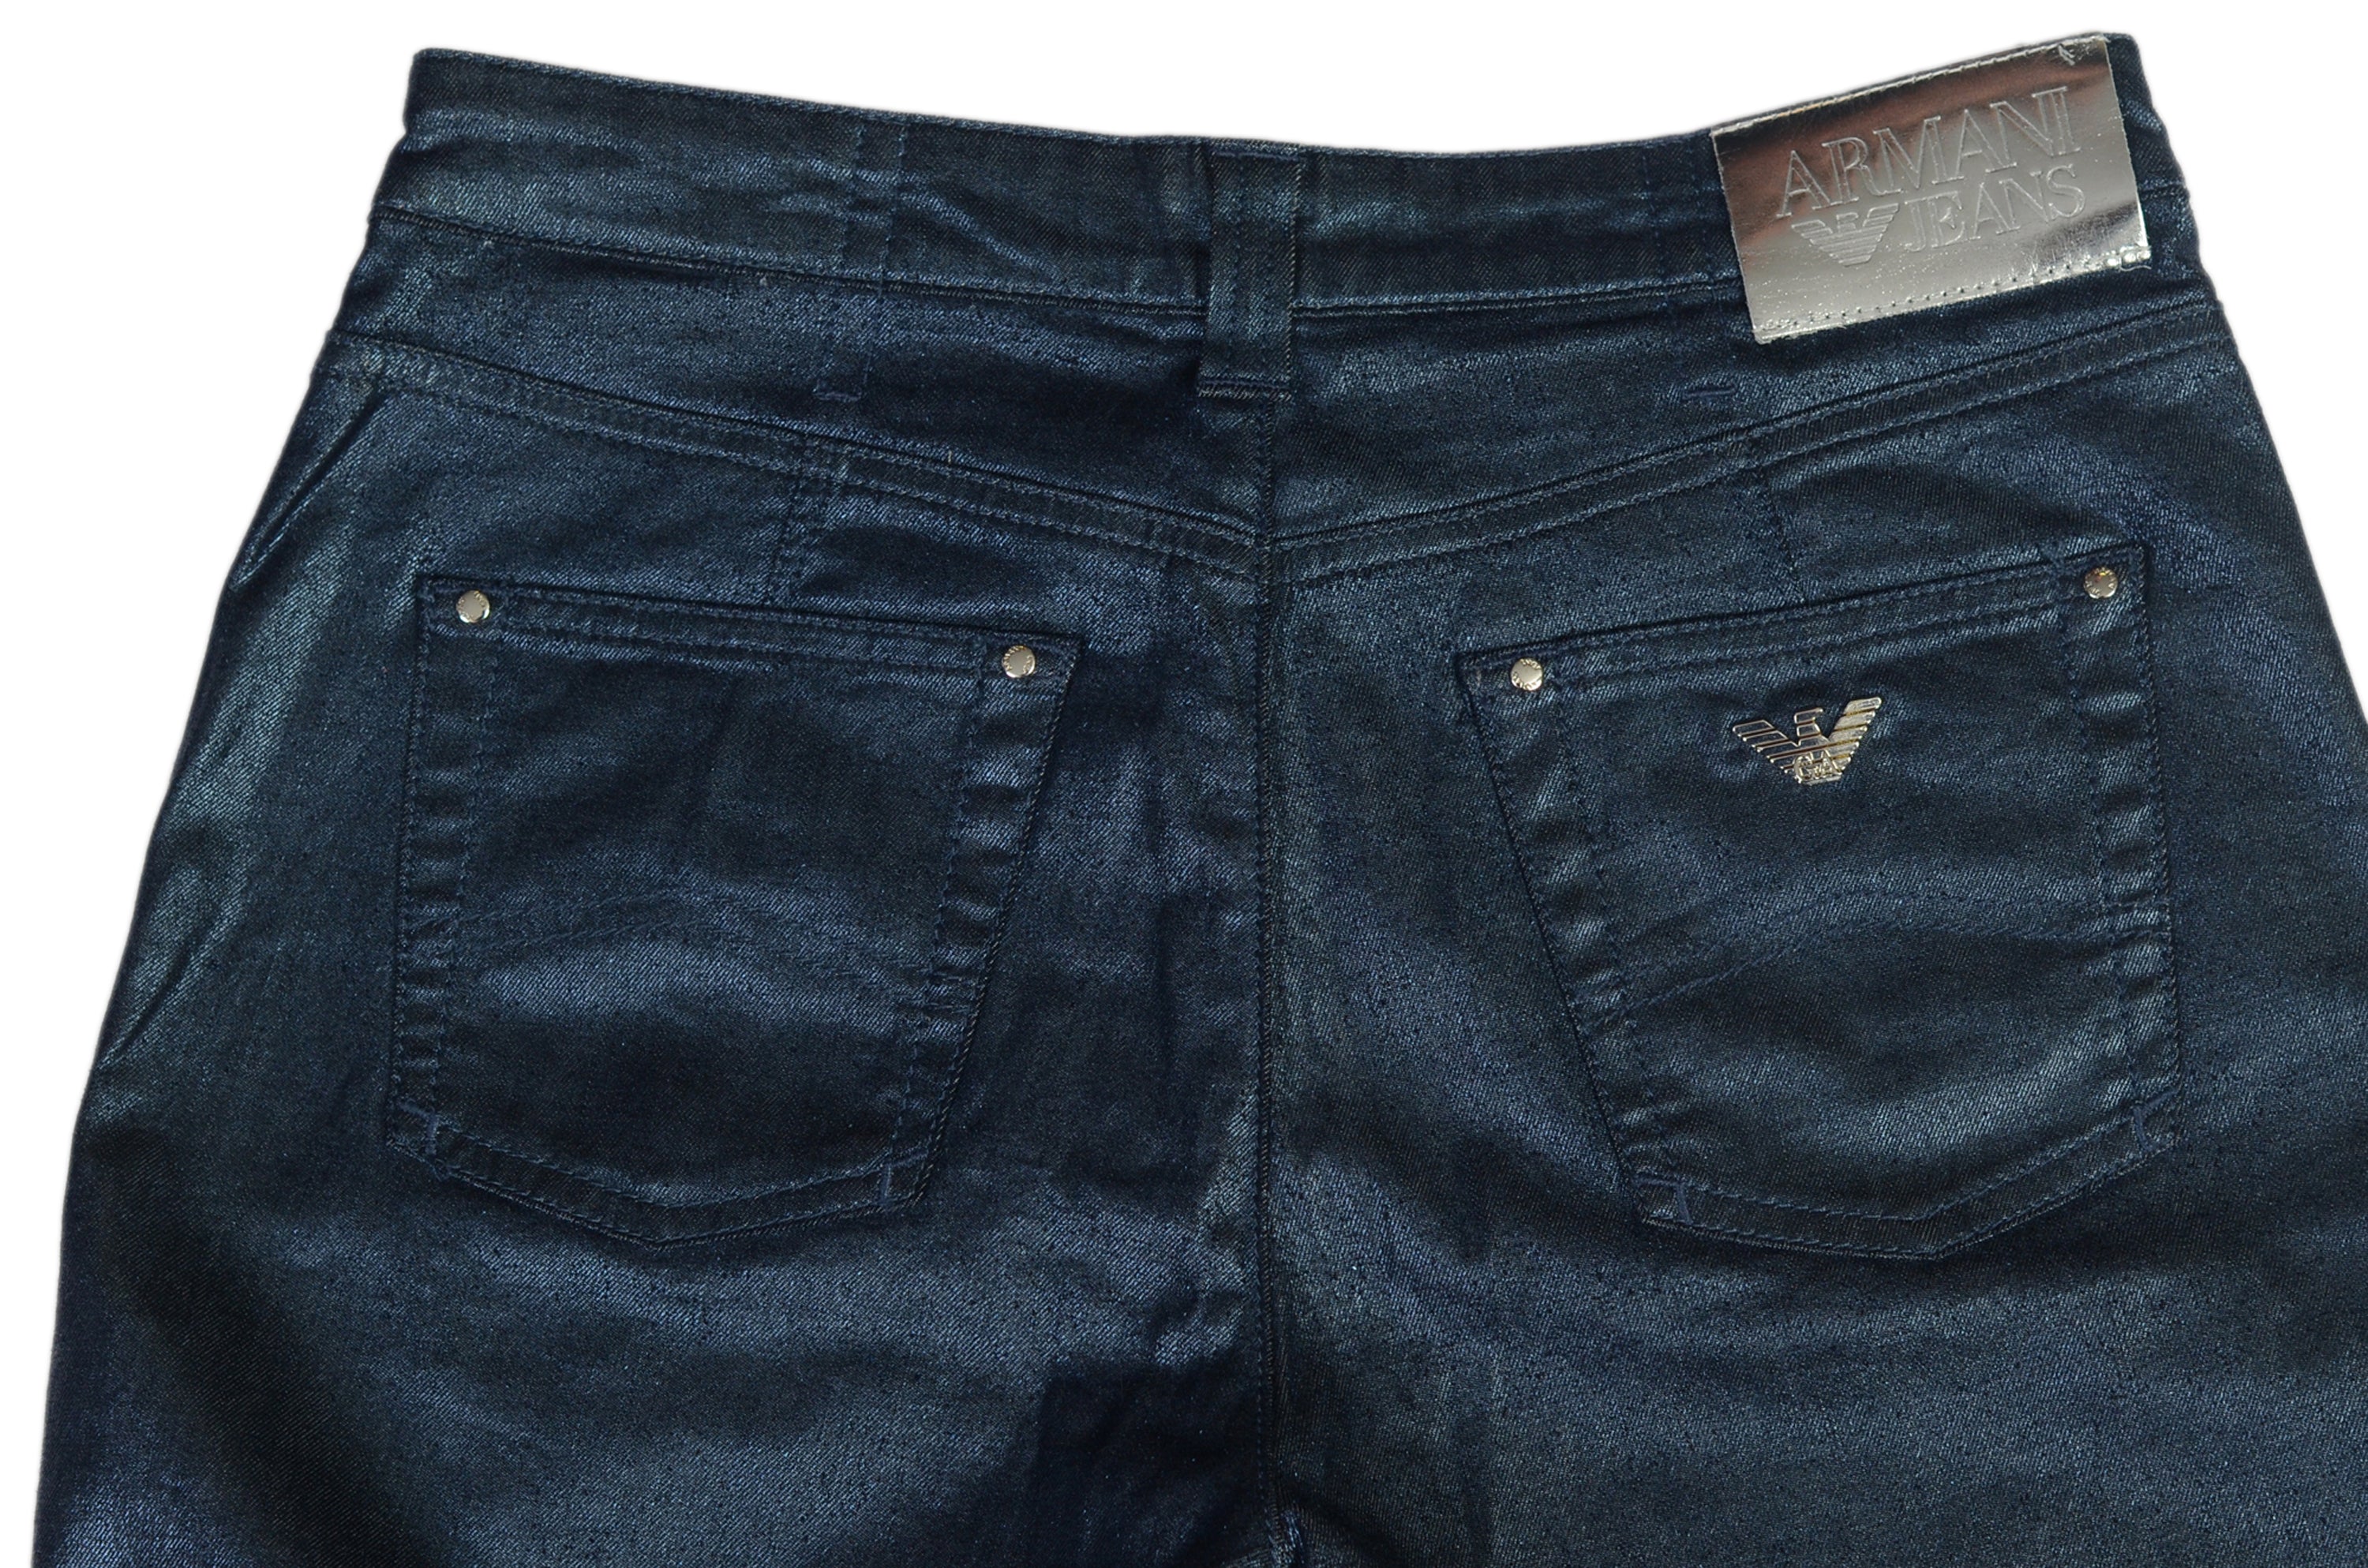 AJ ARMANI JEANS Blue Cotton Stretch Jeans Pants NEW US 29 WOMEN'S BOUTIQUE